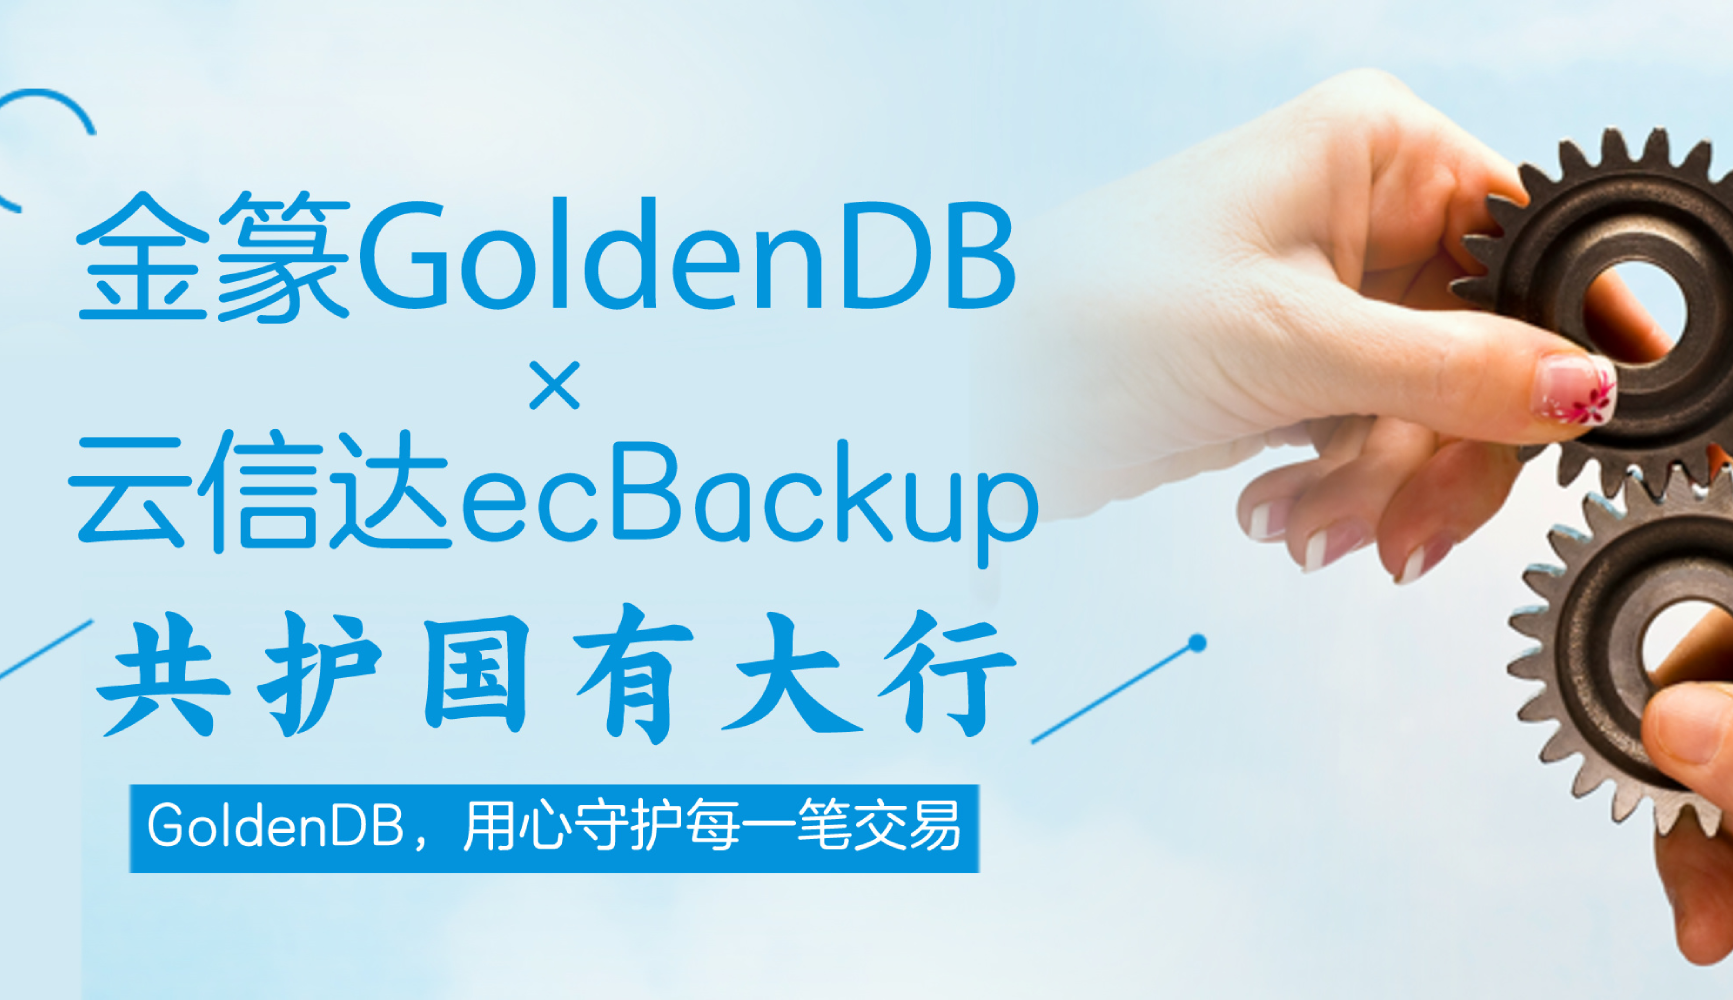 护航国有大行对私核心系统：中兴通讯金篆GoldenDB携手云信达ecBackup打造大规模数据备份联合解决方案